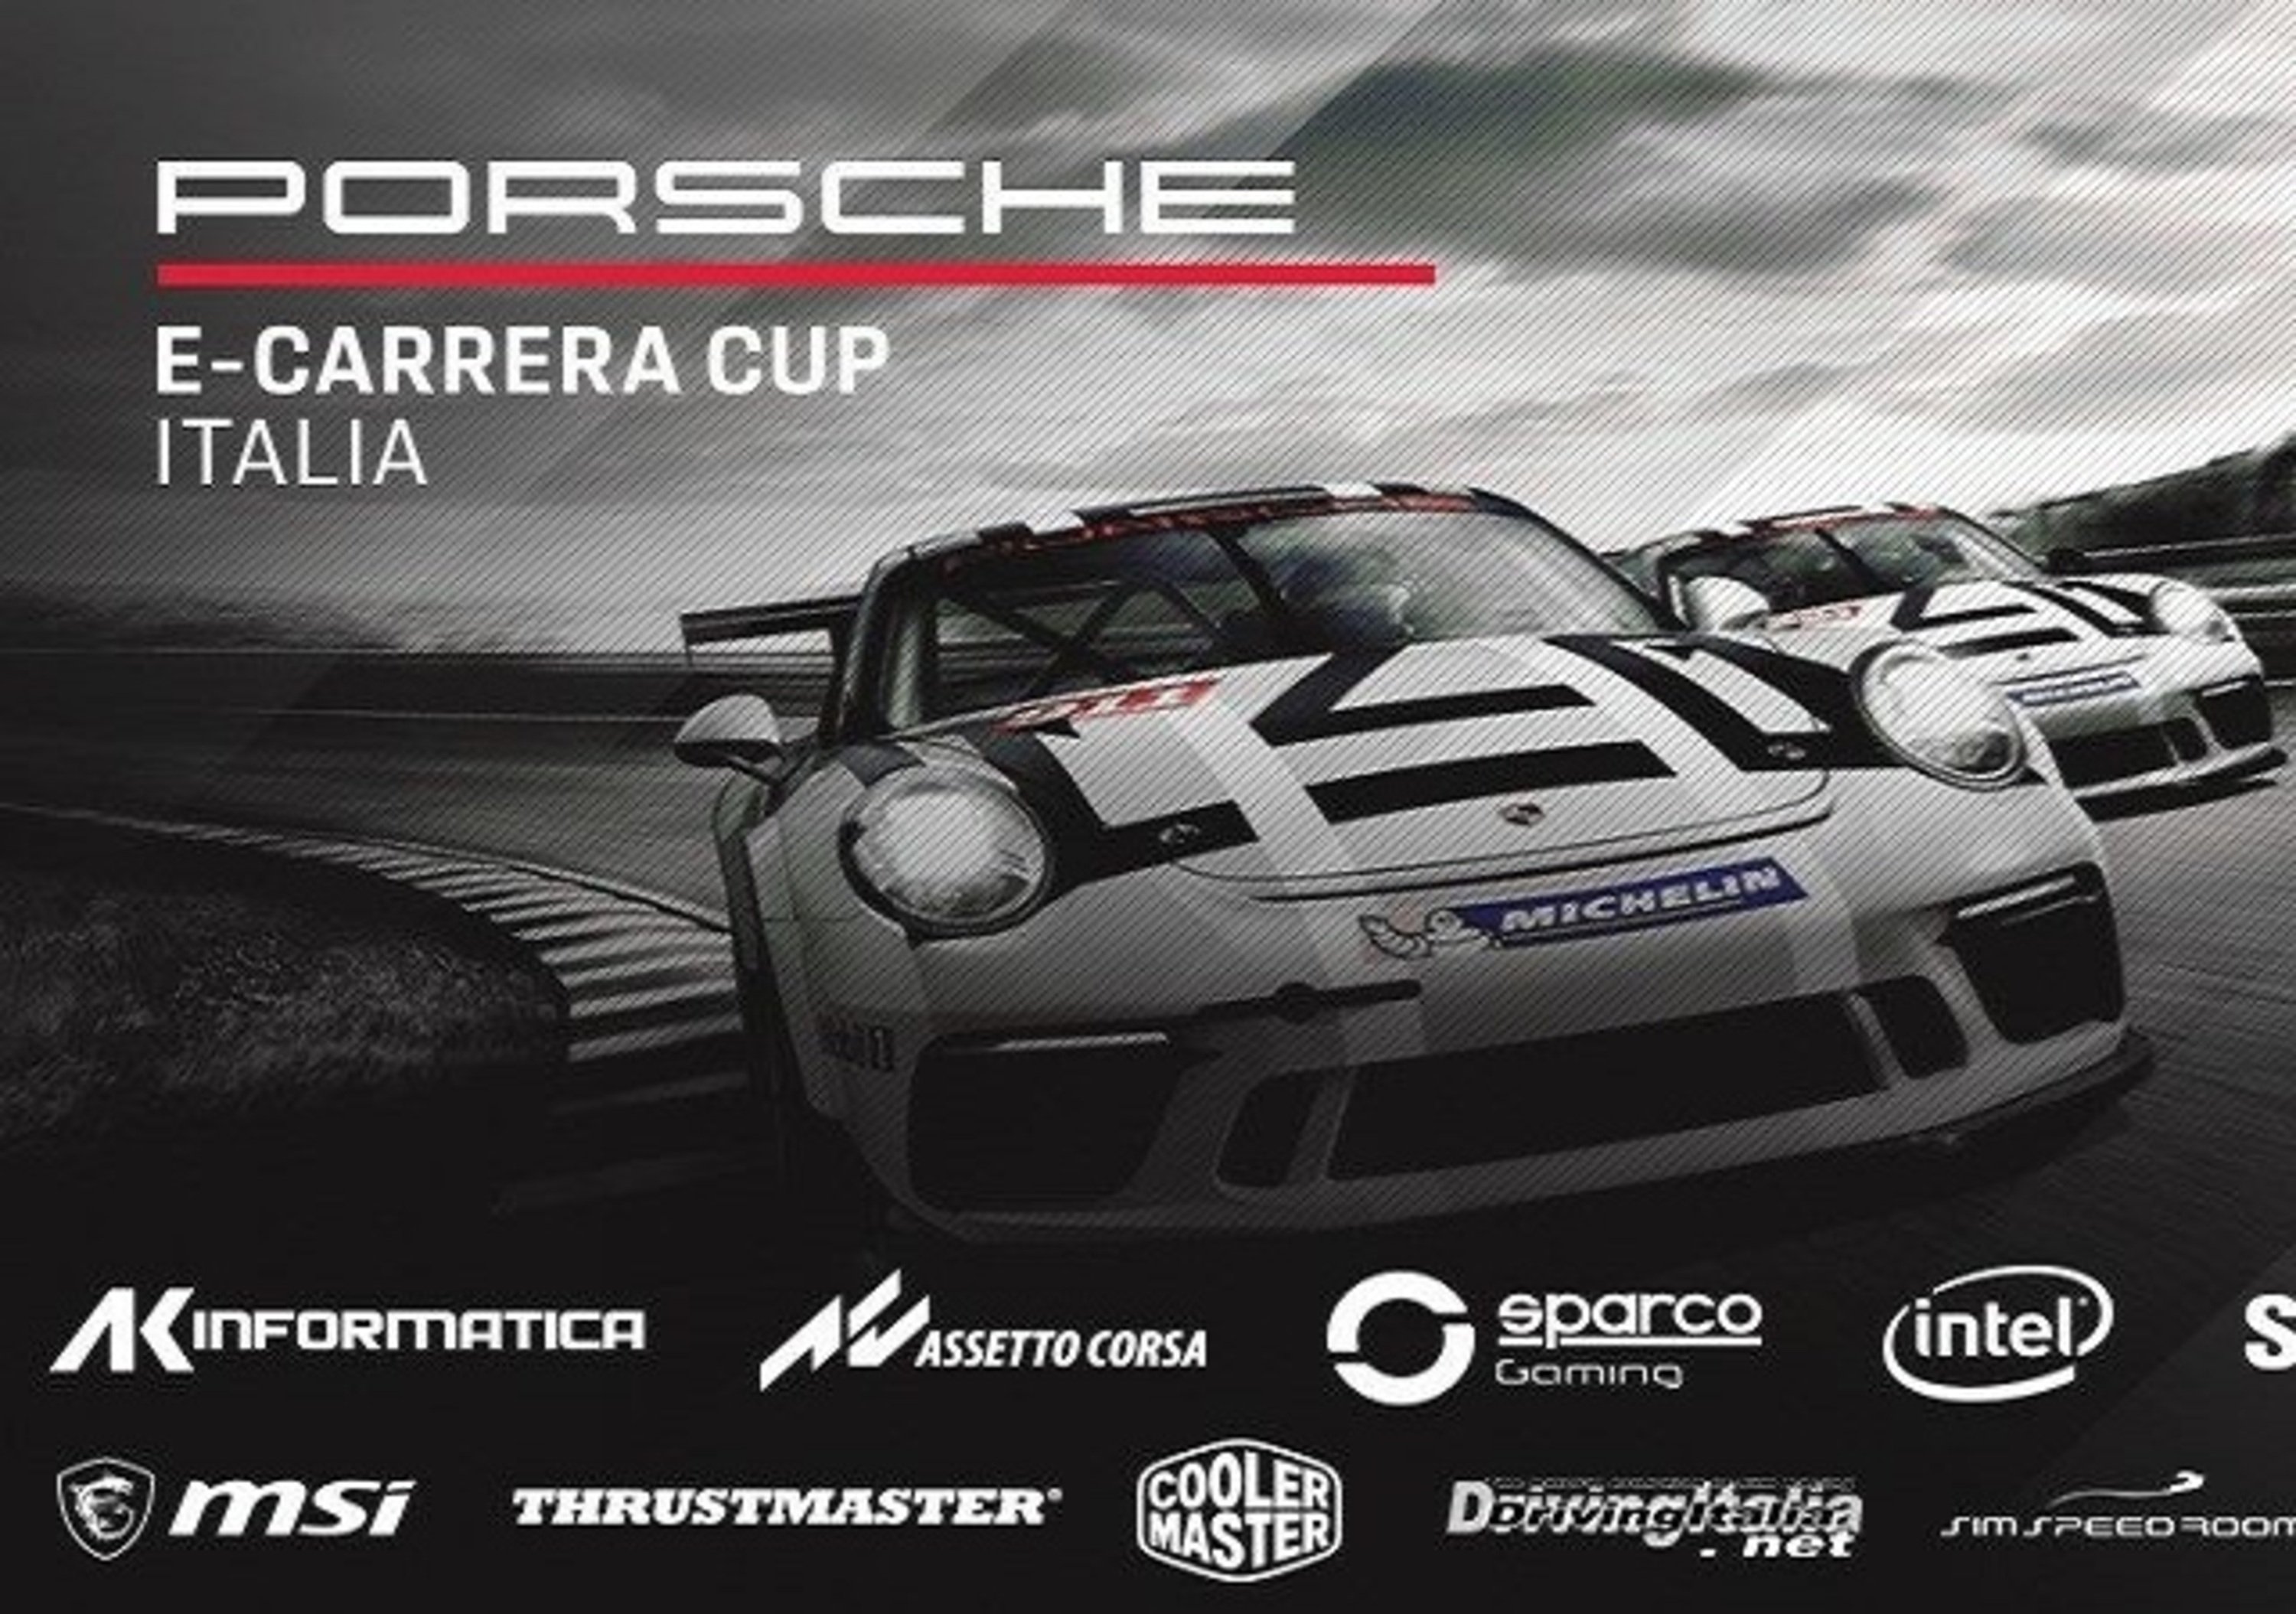 Assetto Corsa, aperte le iscrizioni al Porsche e-Carrera Cup Italia